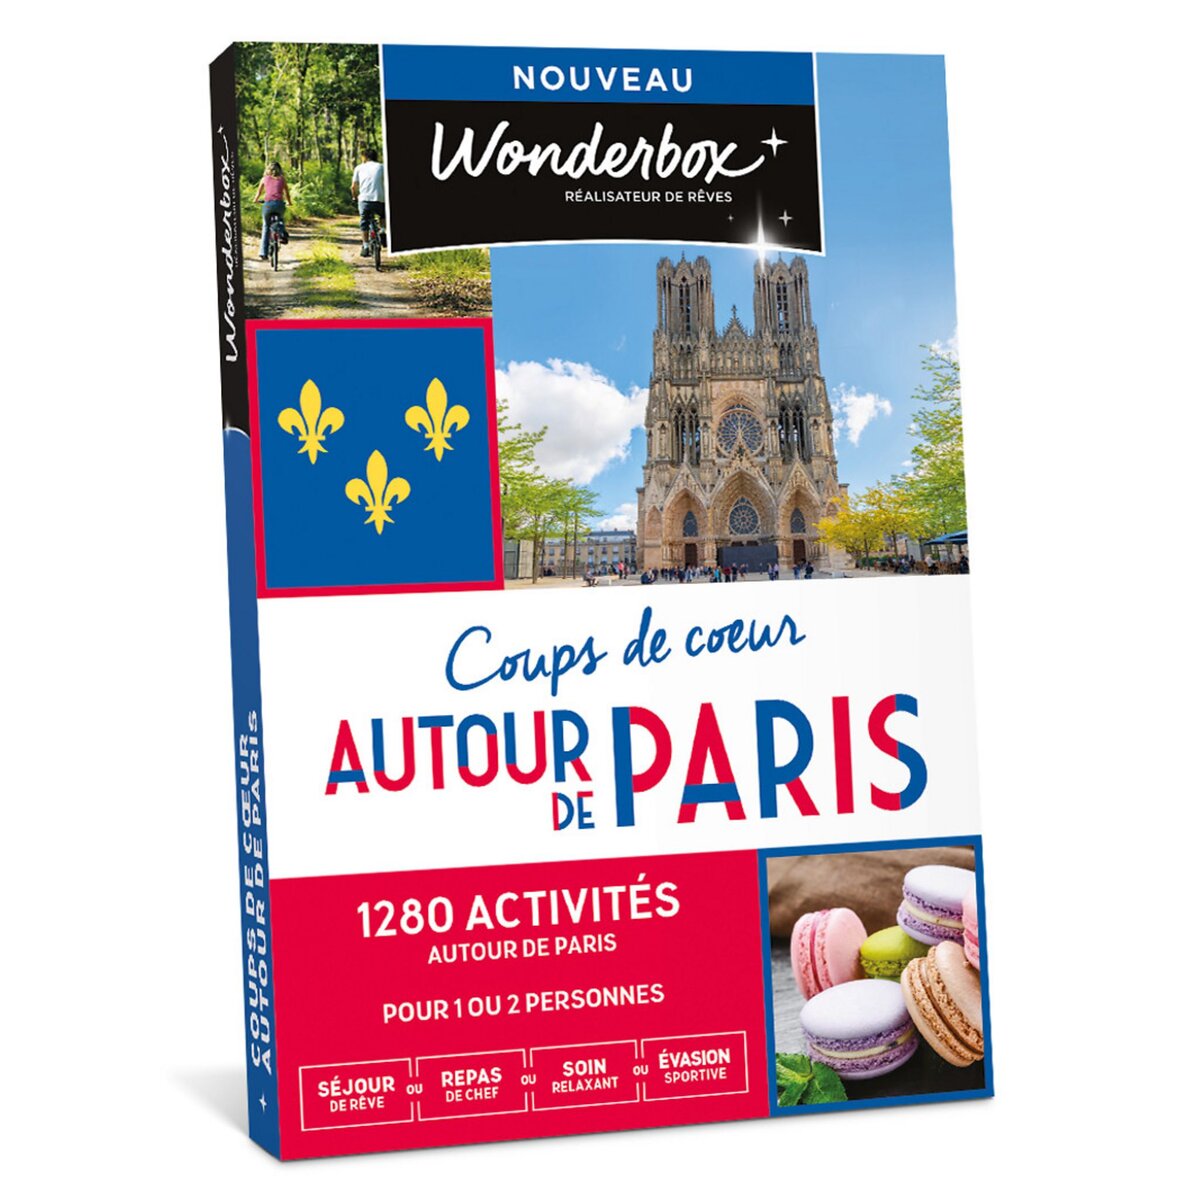 Wonderbox Coups de cœur autour de Paris